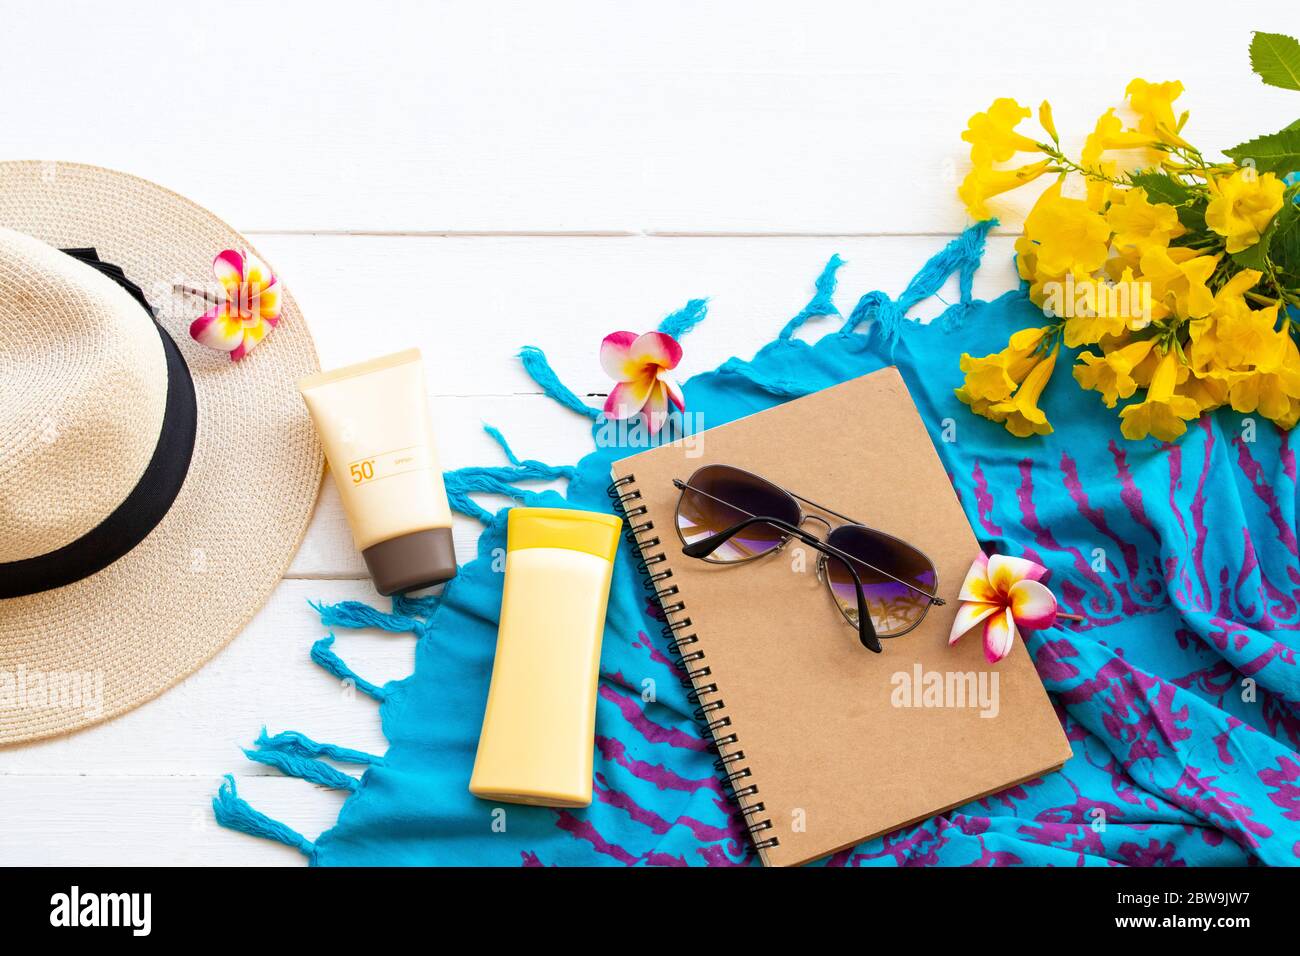 Sonnencreme spf50, Körperlotion Gesundheitspflege für die Haut mit Sonnenbrille, Hut, Notizbuch Planer, Schal und Blumen des Lebensstils Frau entspannen Sommer auf weiß Stockfoto